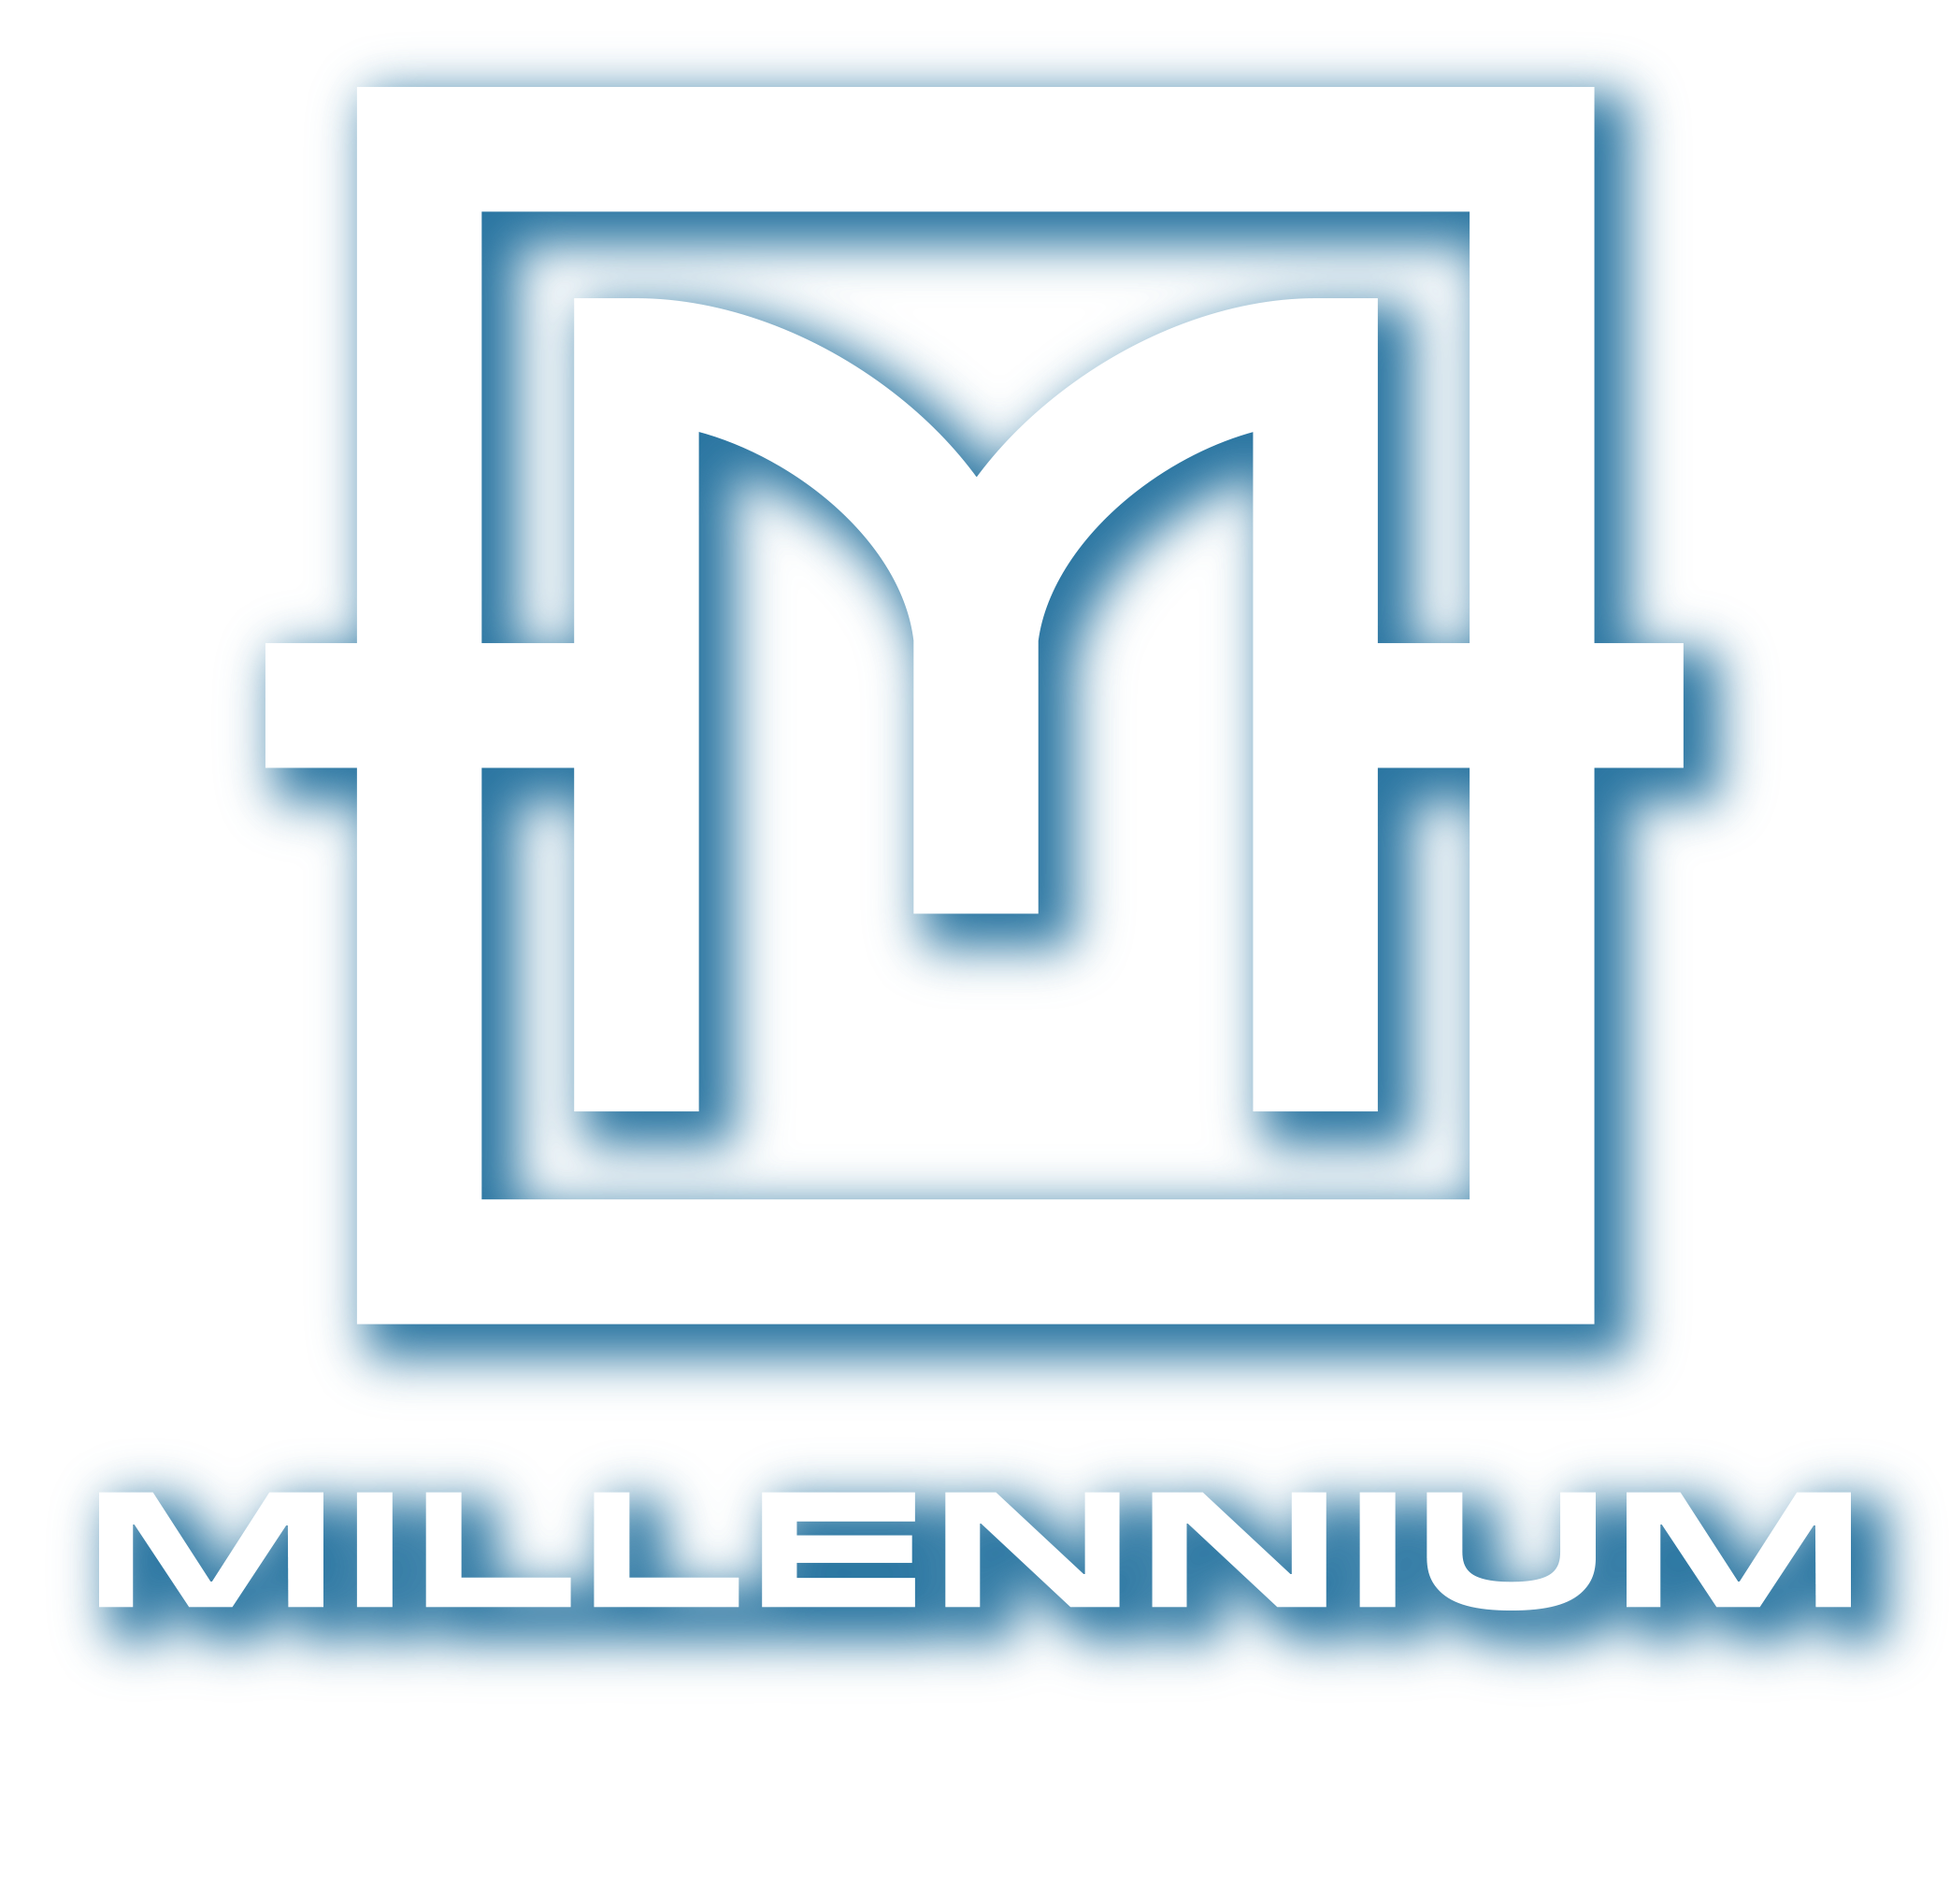 Millennium | GroundFloor Development